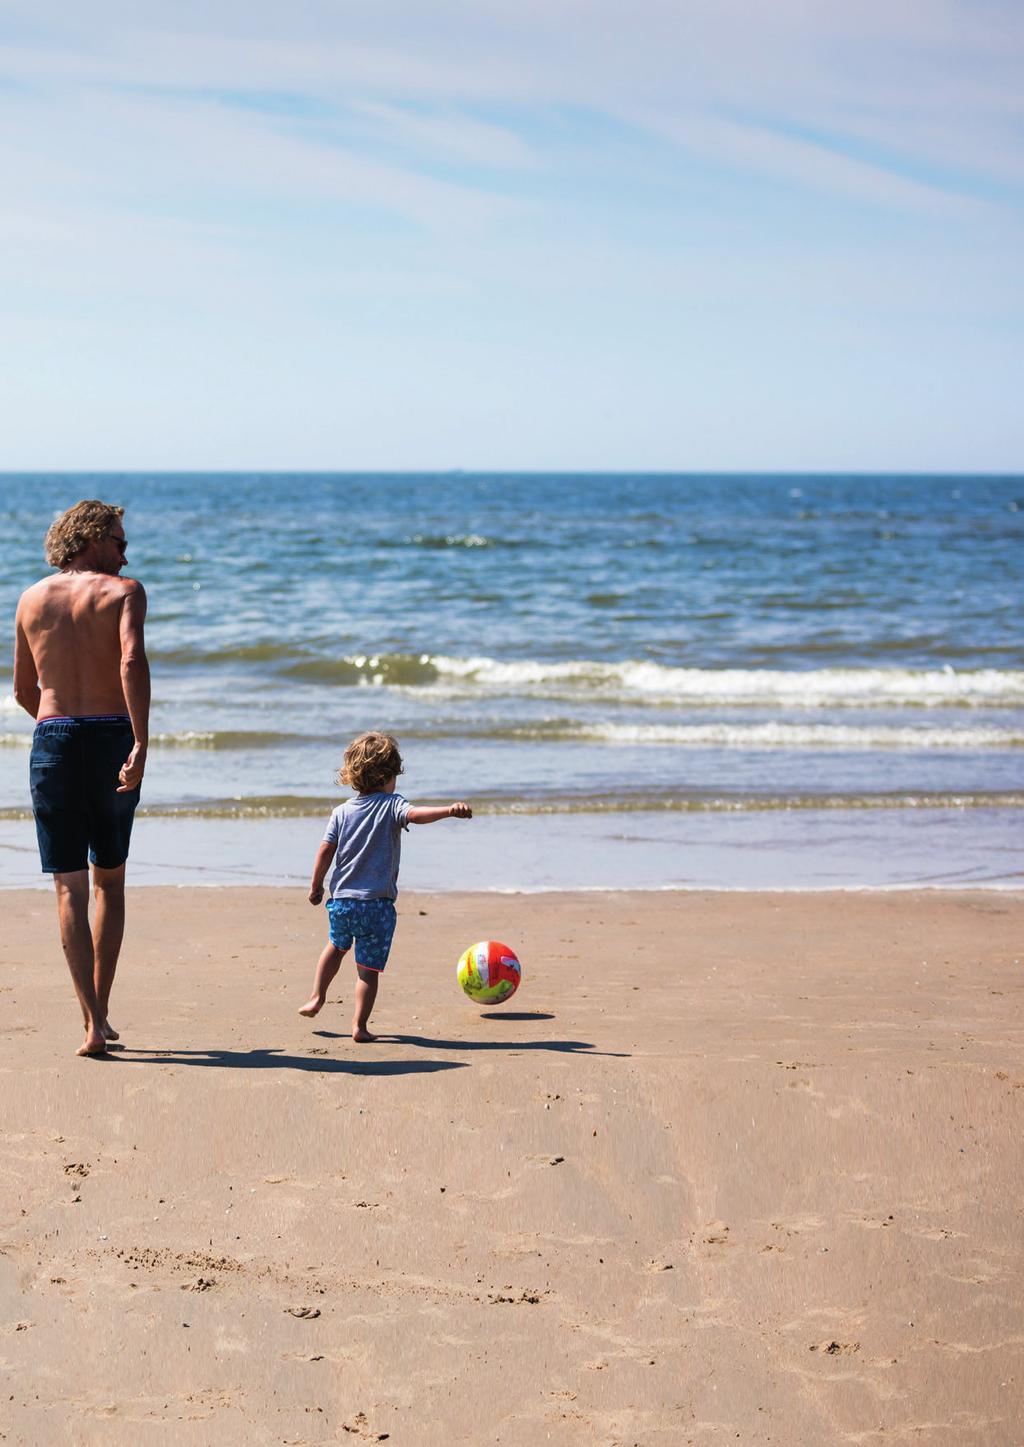 Ouders over zwemveiligheid en zwemles Vanuit het project NL Zwemveilig wordt onderzoek gedaan naar de ervaringen van ouders wat betreft zwemlessen en hoe ze denken over zwemveiligheid.